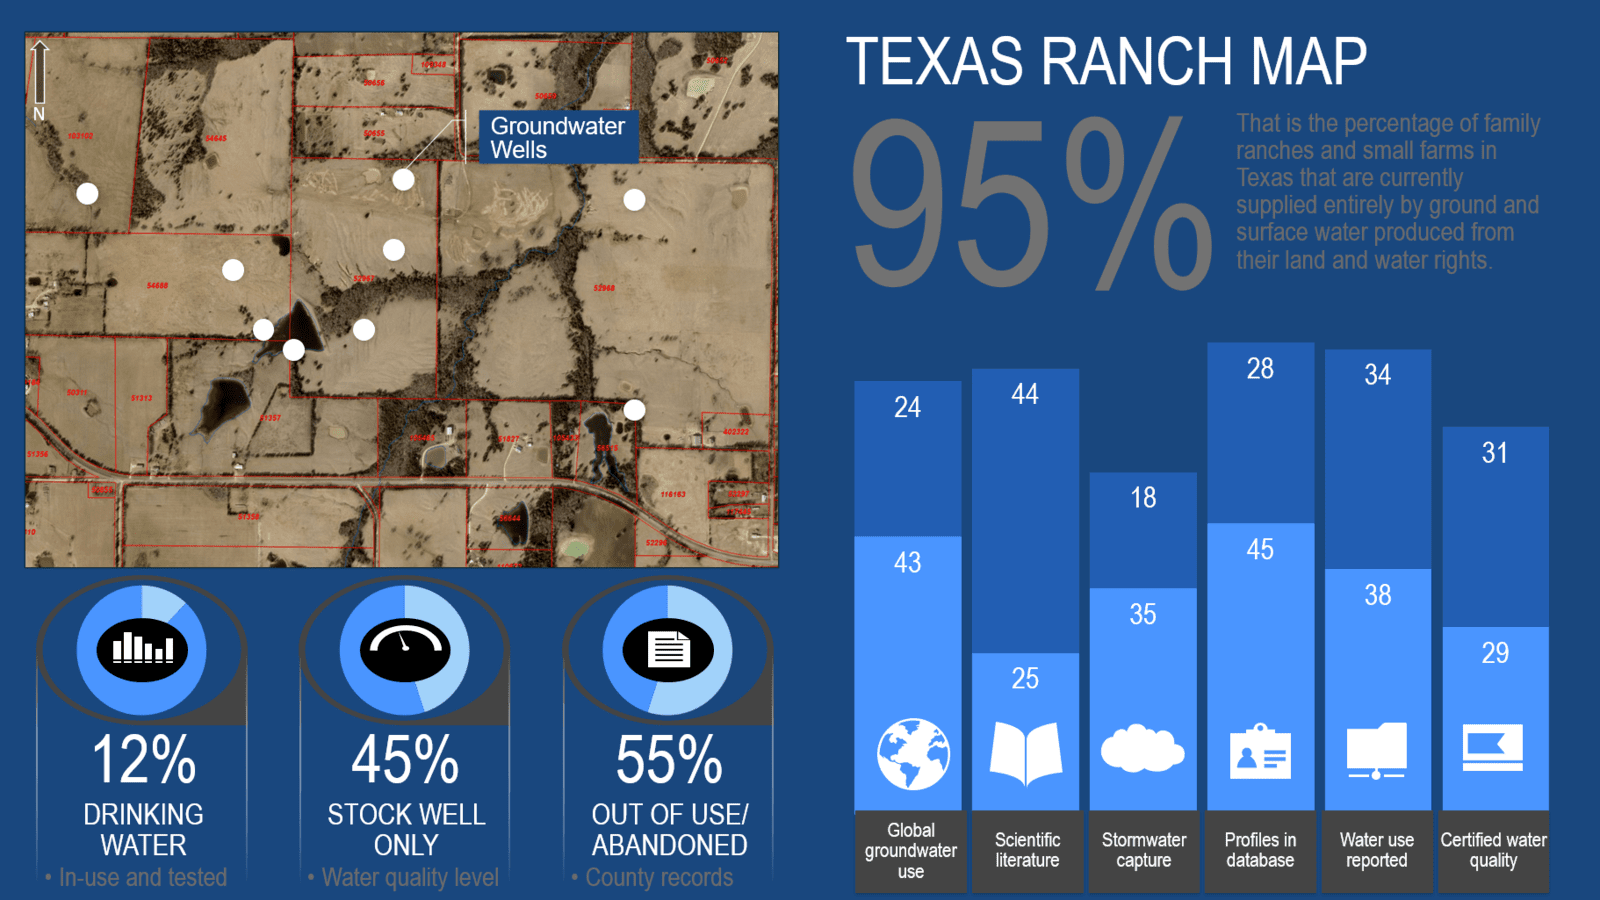 Texas ranch map made using QGIS (sample)